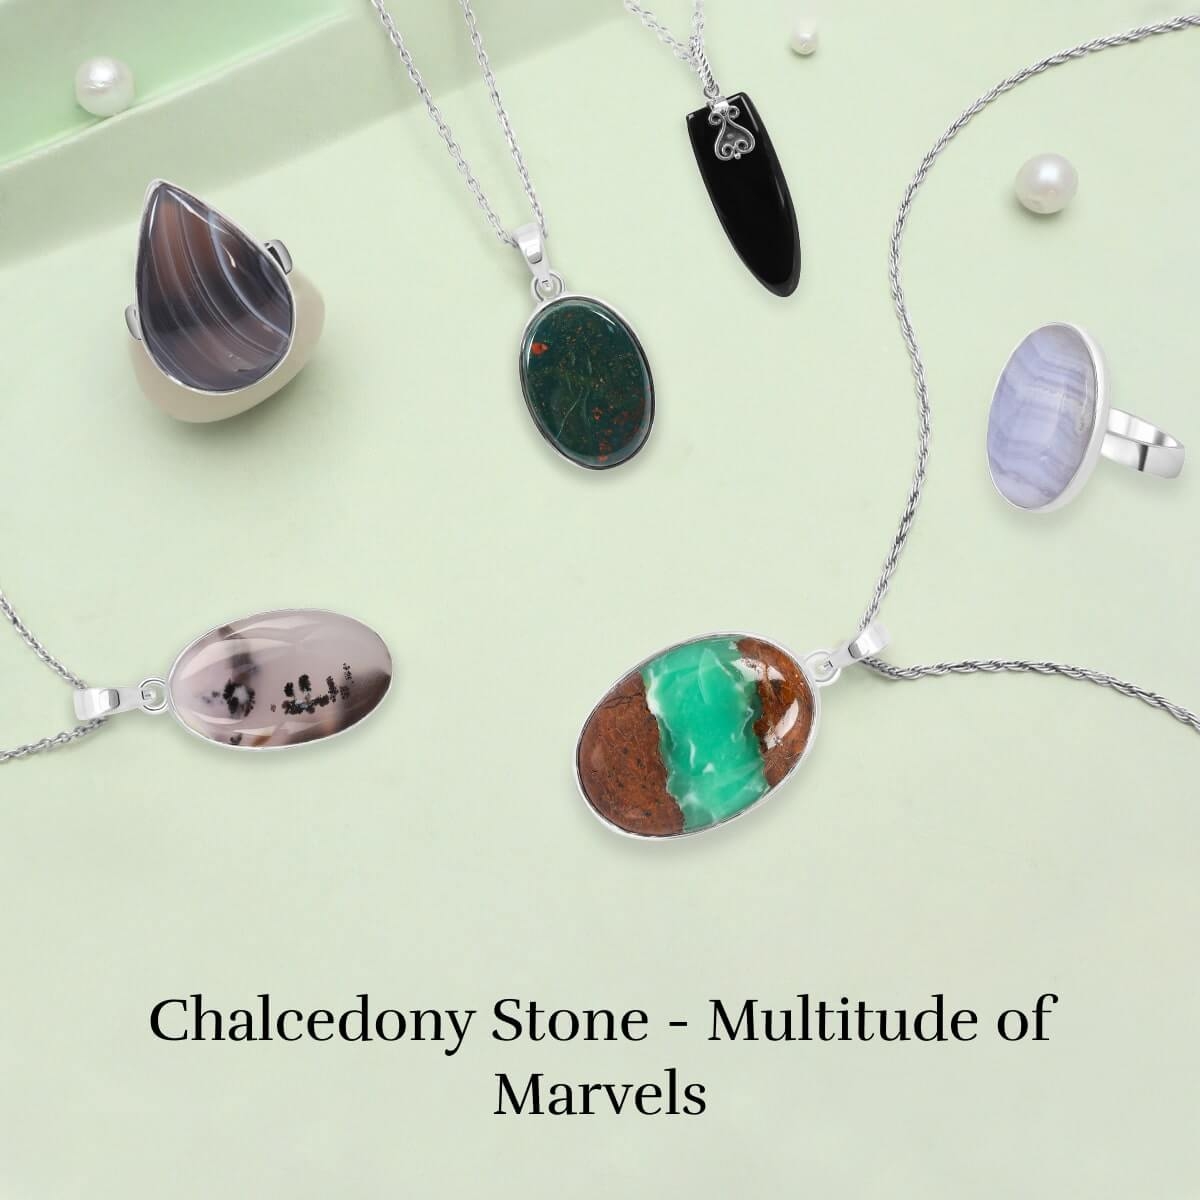 Varieties of Chalcedony Stone